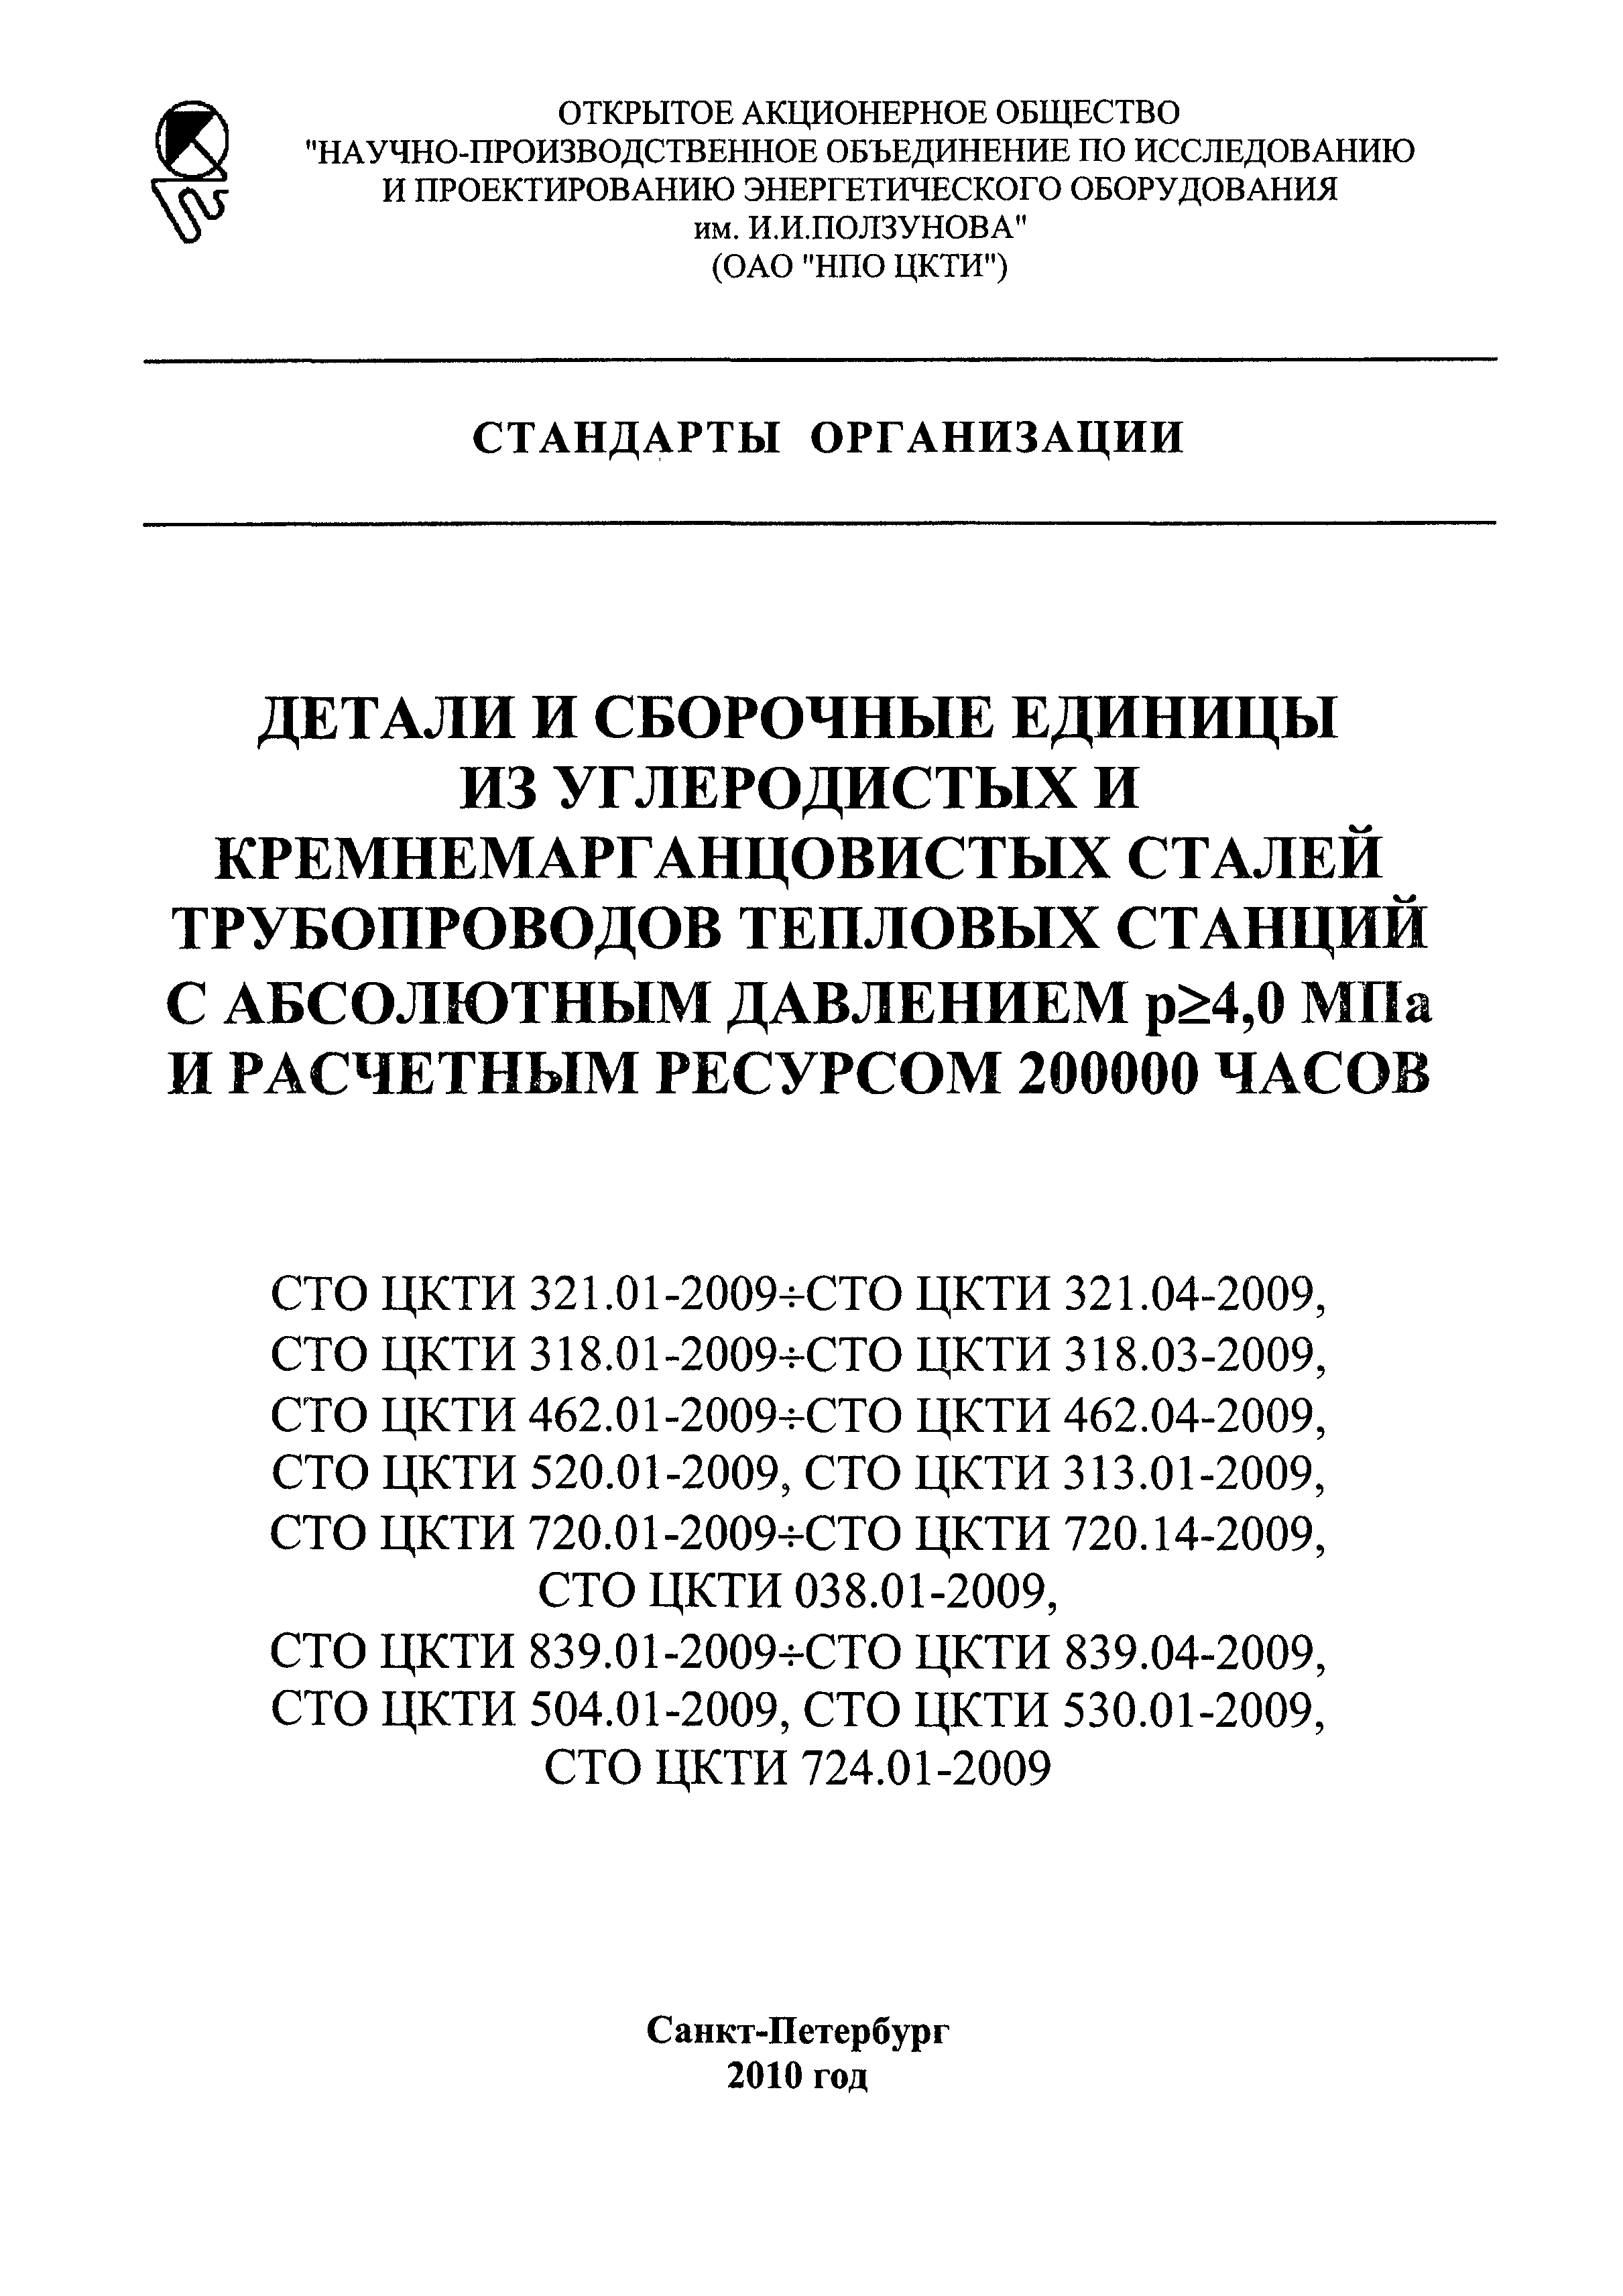 СТО ЦКТИ 313.01-2009